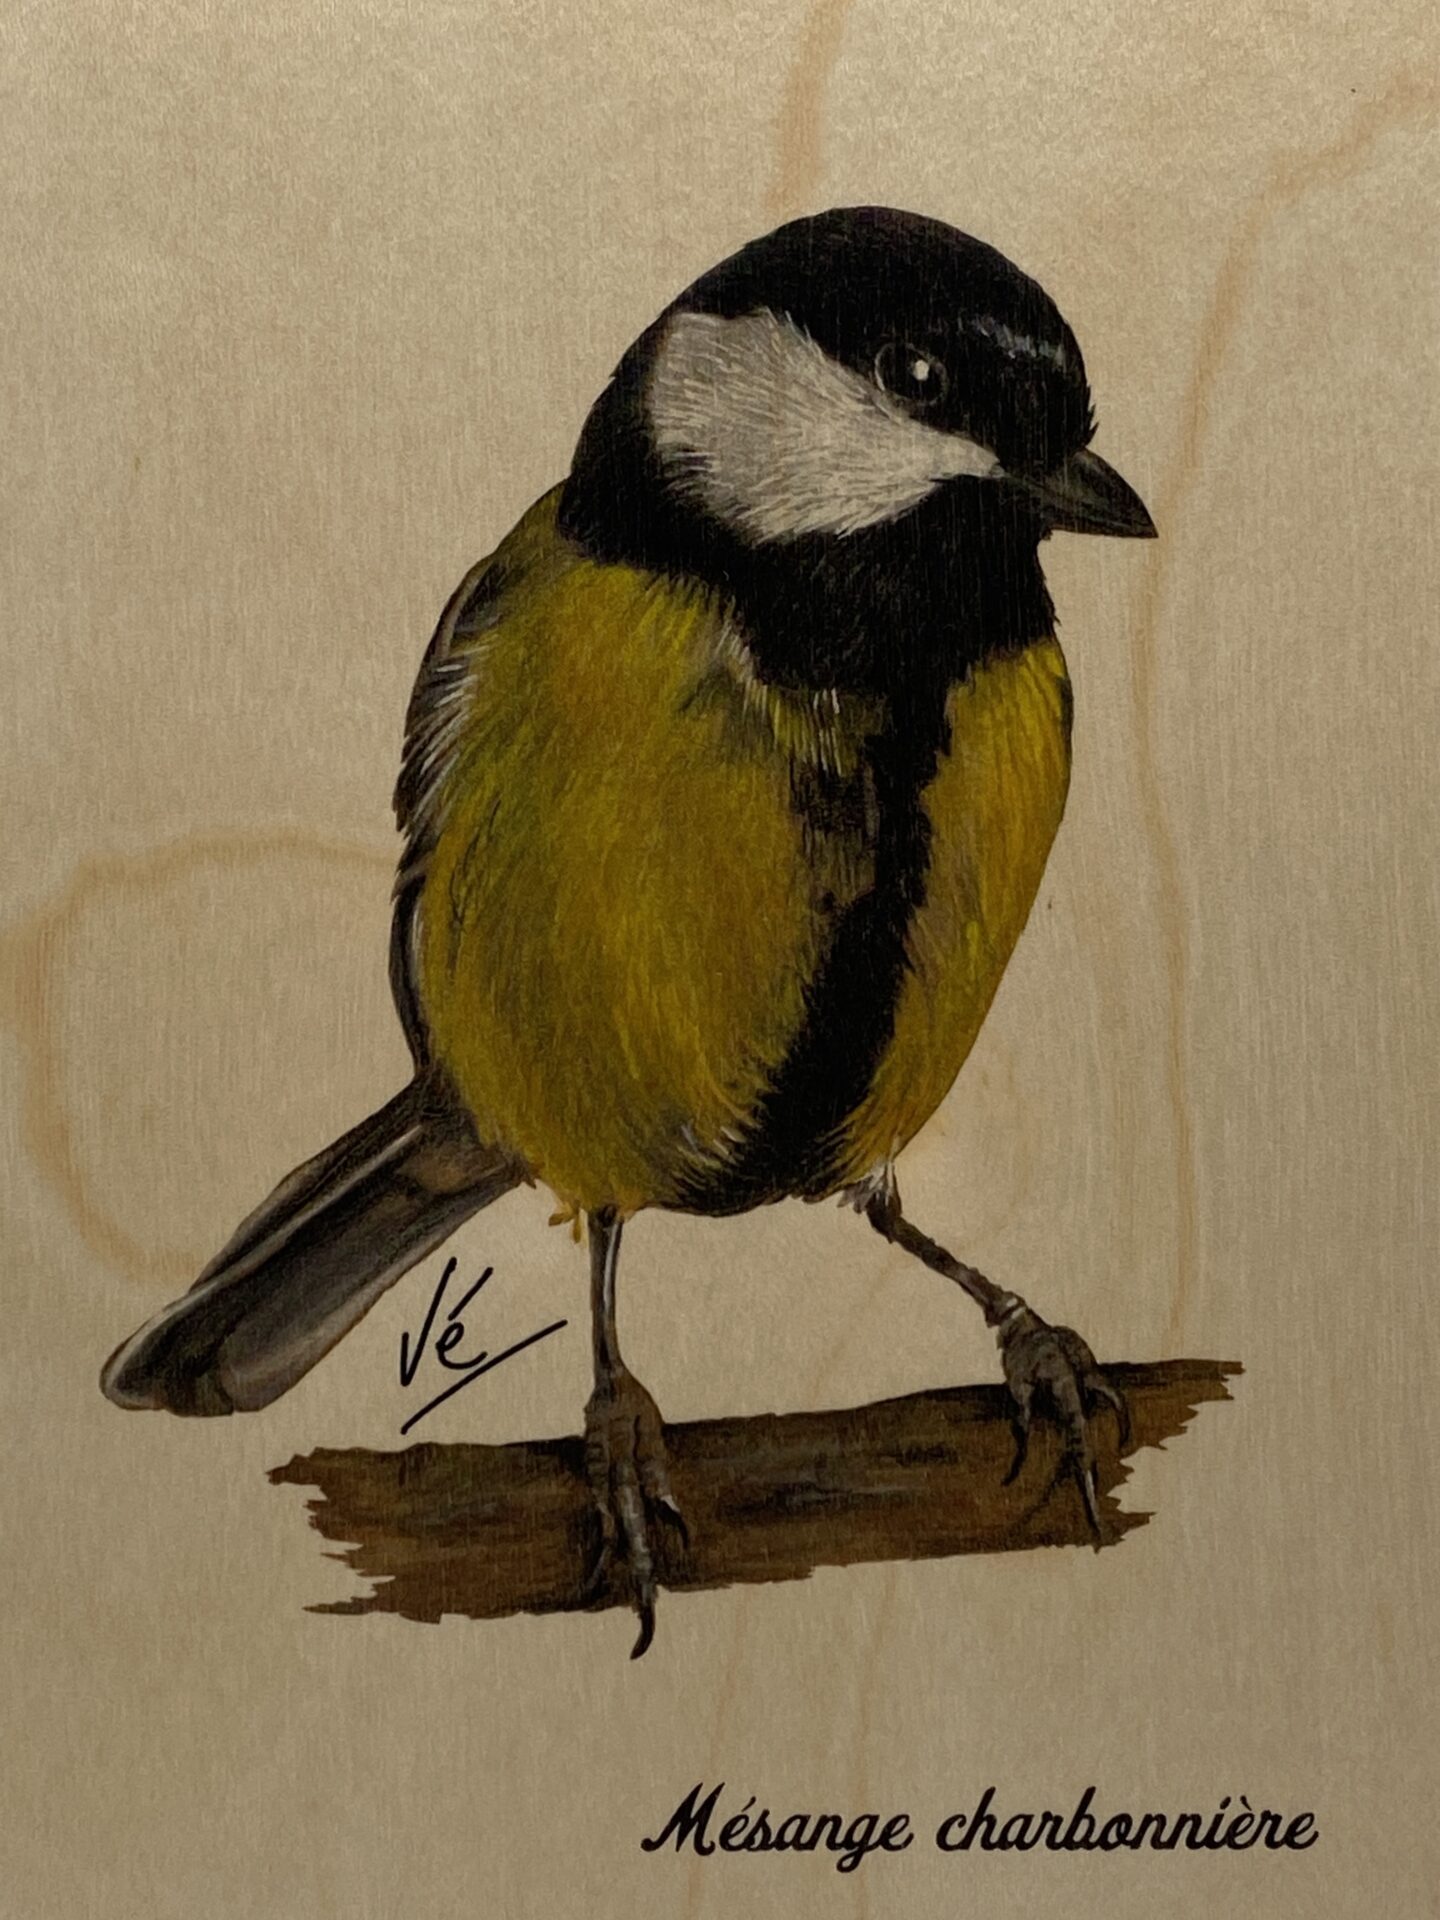 Carte postale papier aquarelle avec enveloppe photo oiseau mésange ble –  Regards Naturalistes